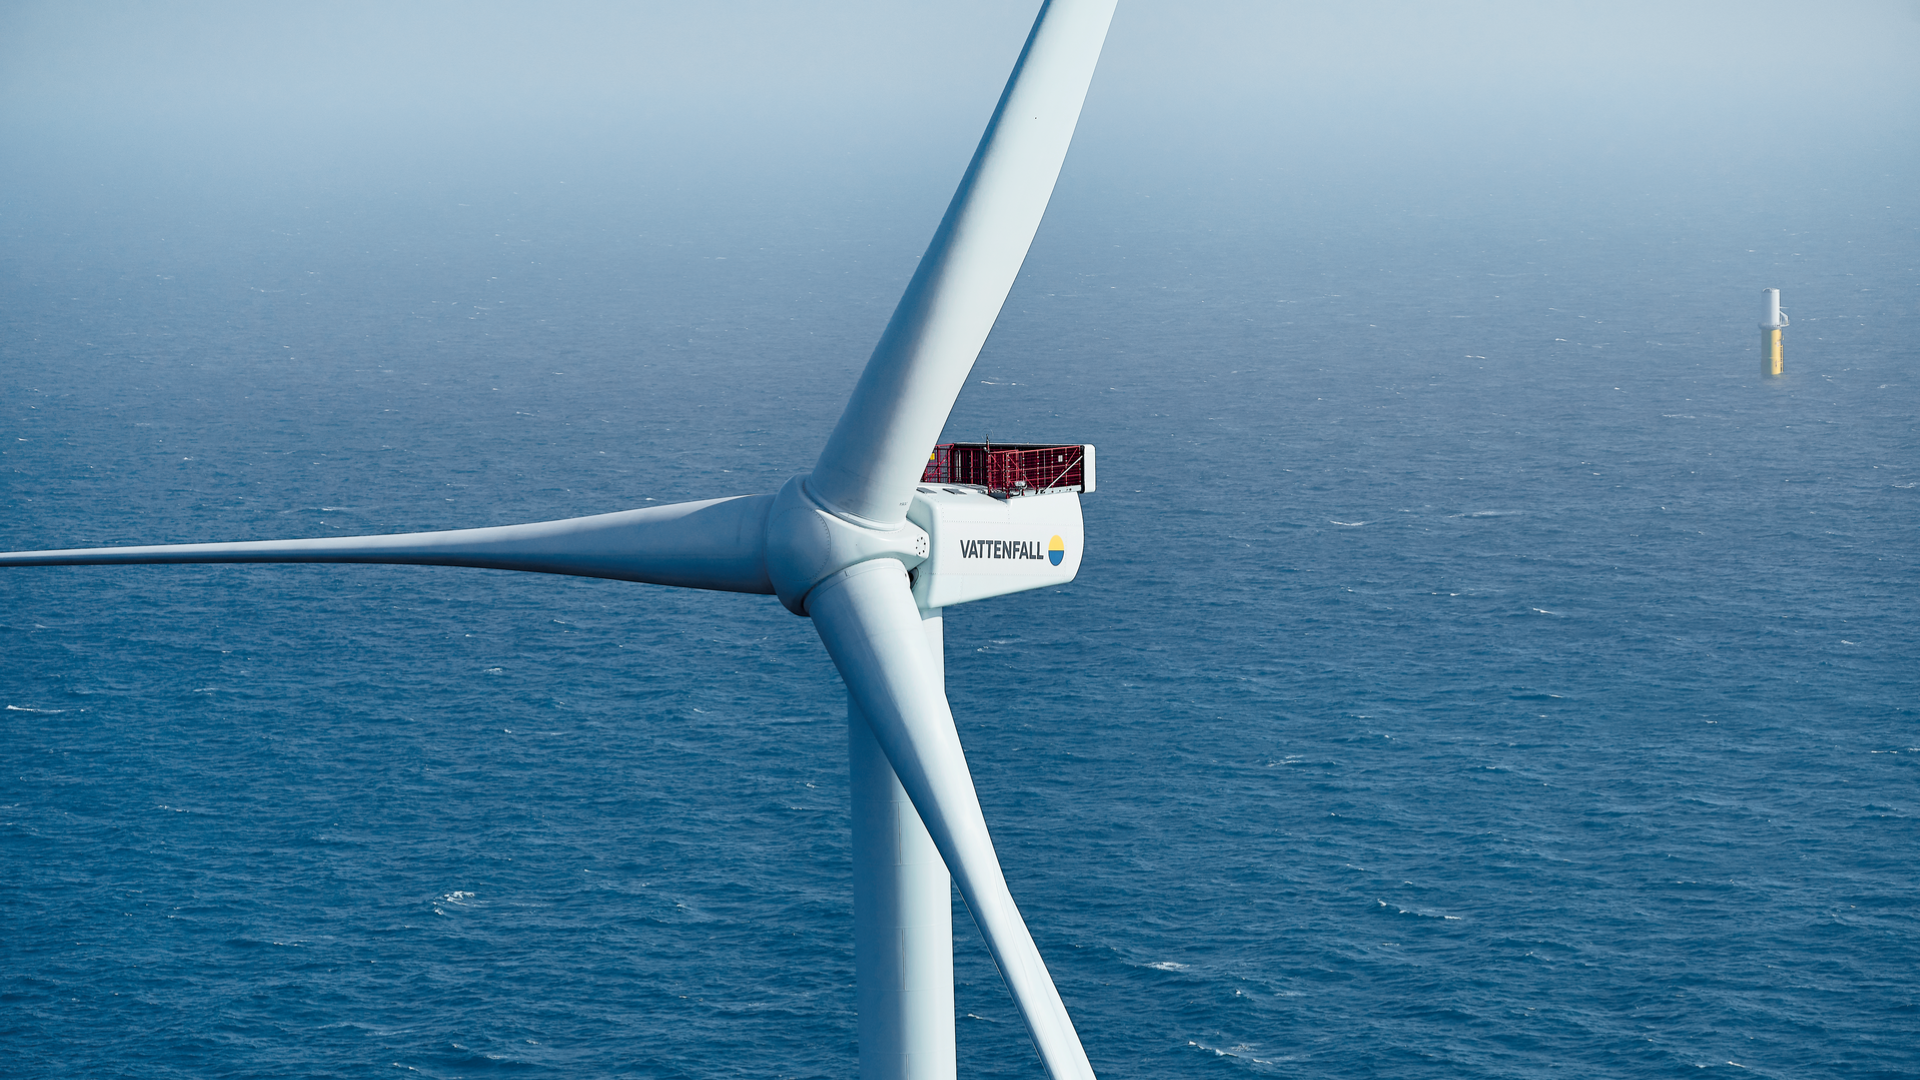 Horns Rev 3 Offshore Wind Farm in Denmark